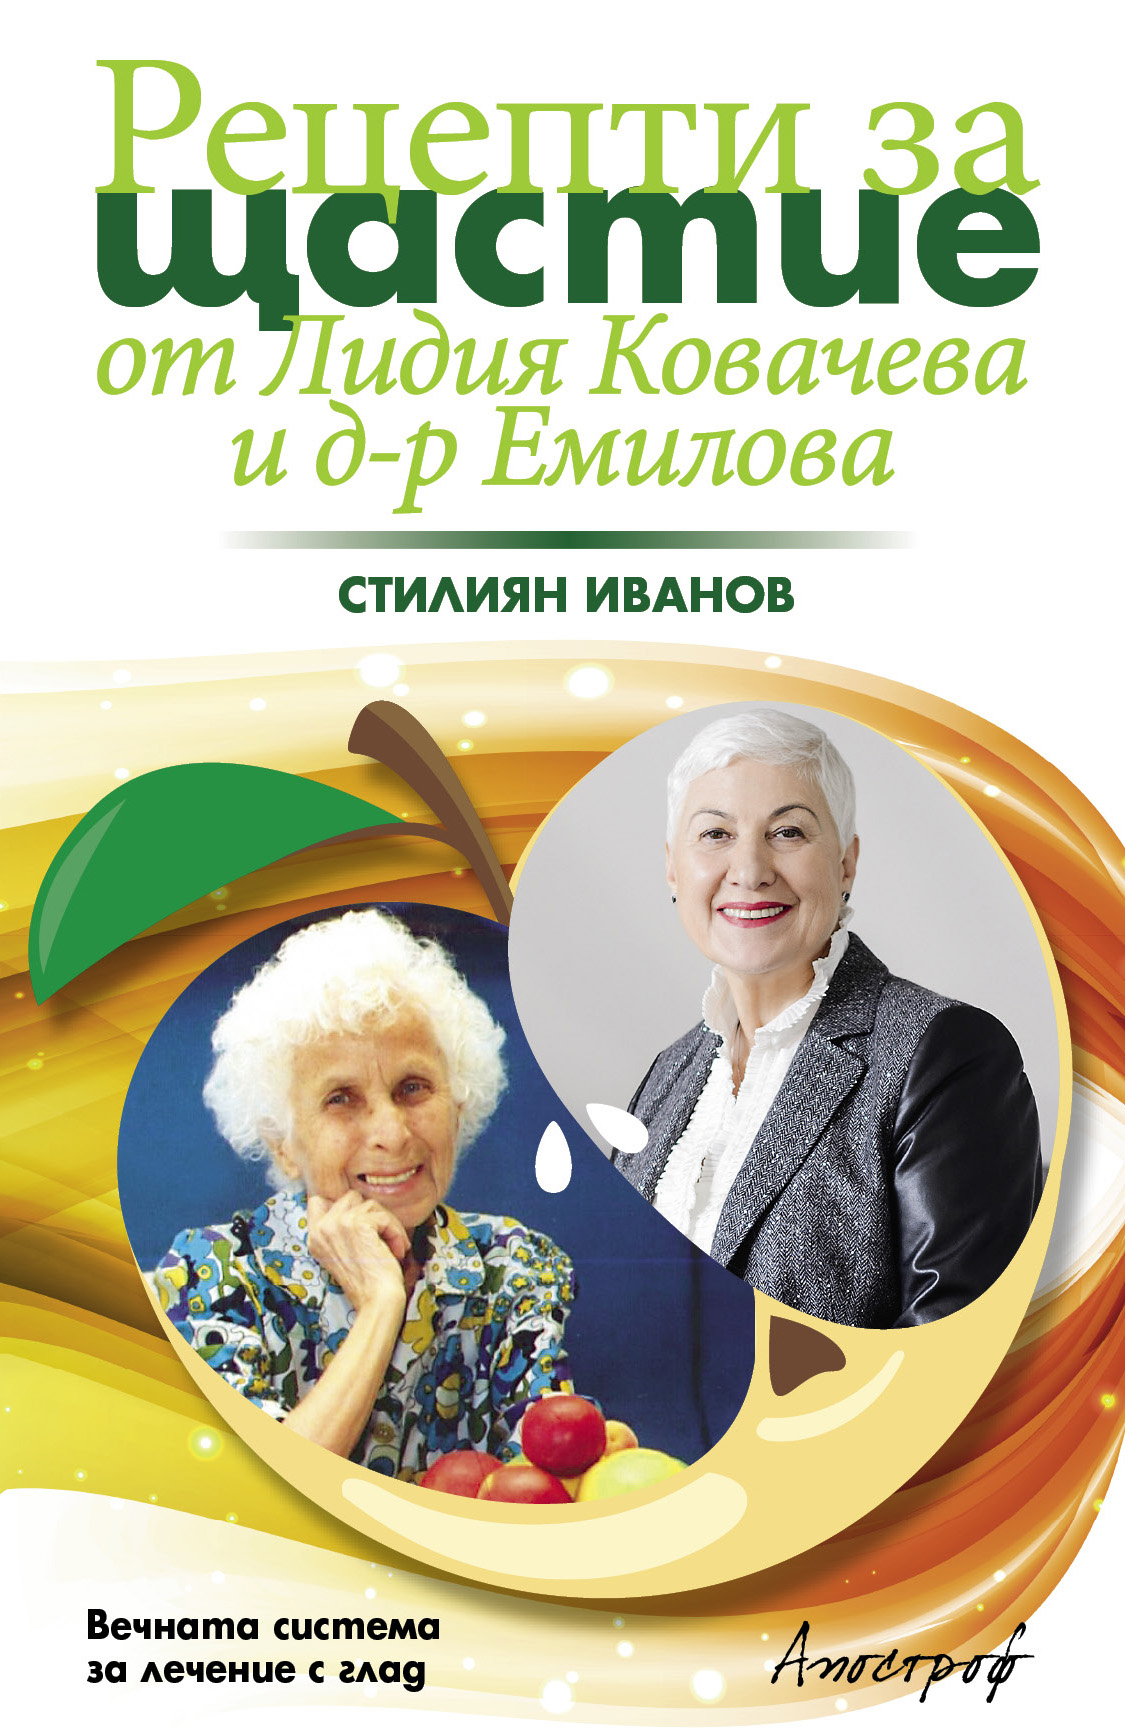 Премиерата на книгата „Рецепти за щастие от Лидия Ковачева и д-р Емилова“